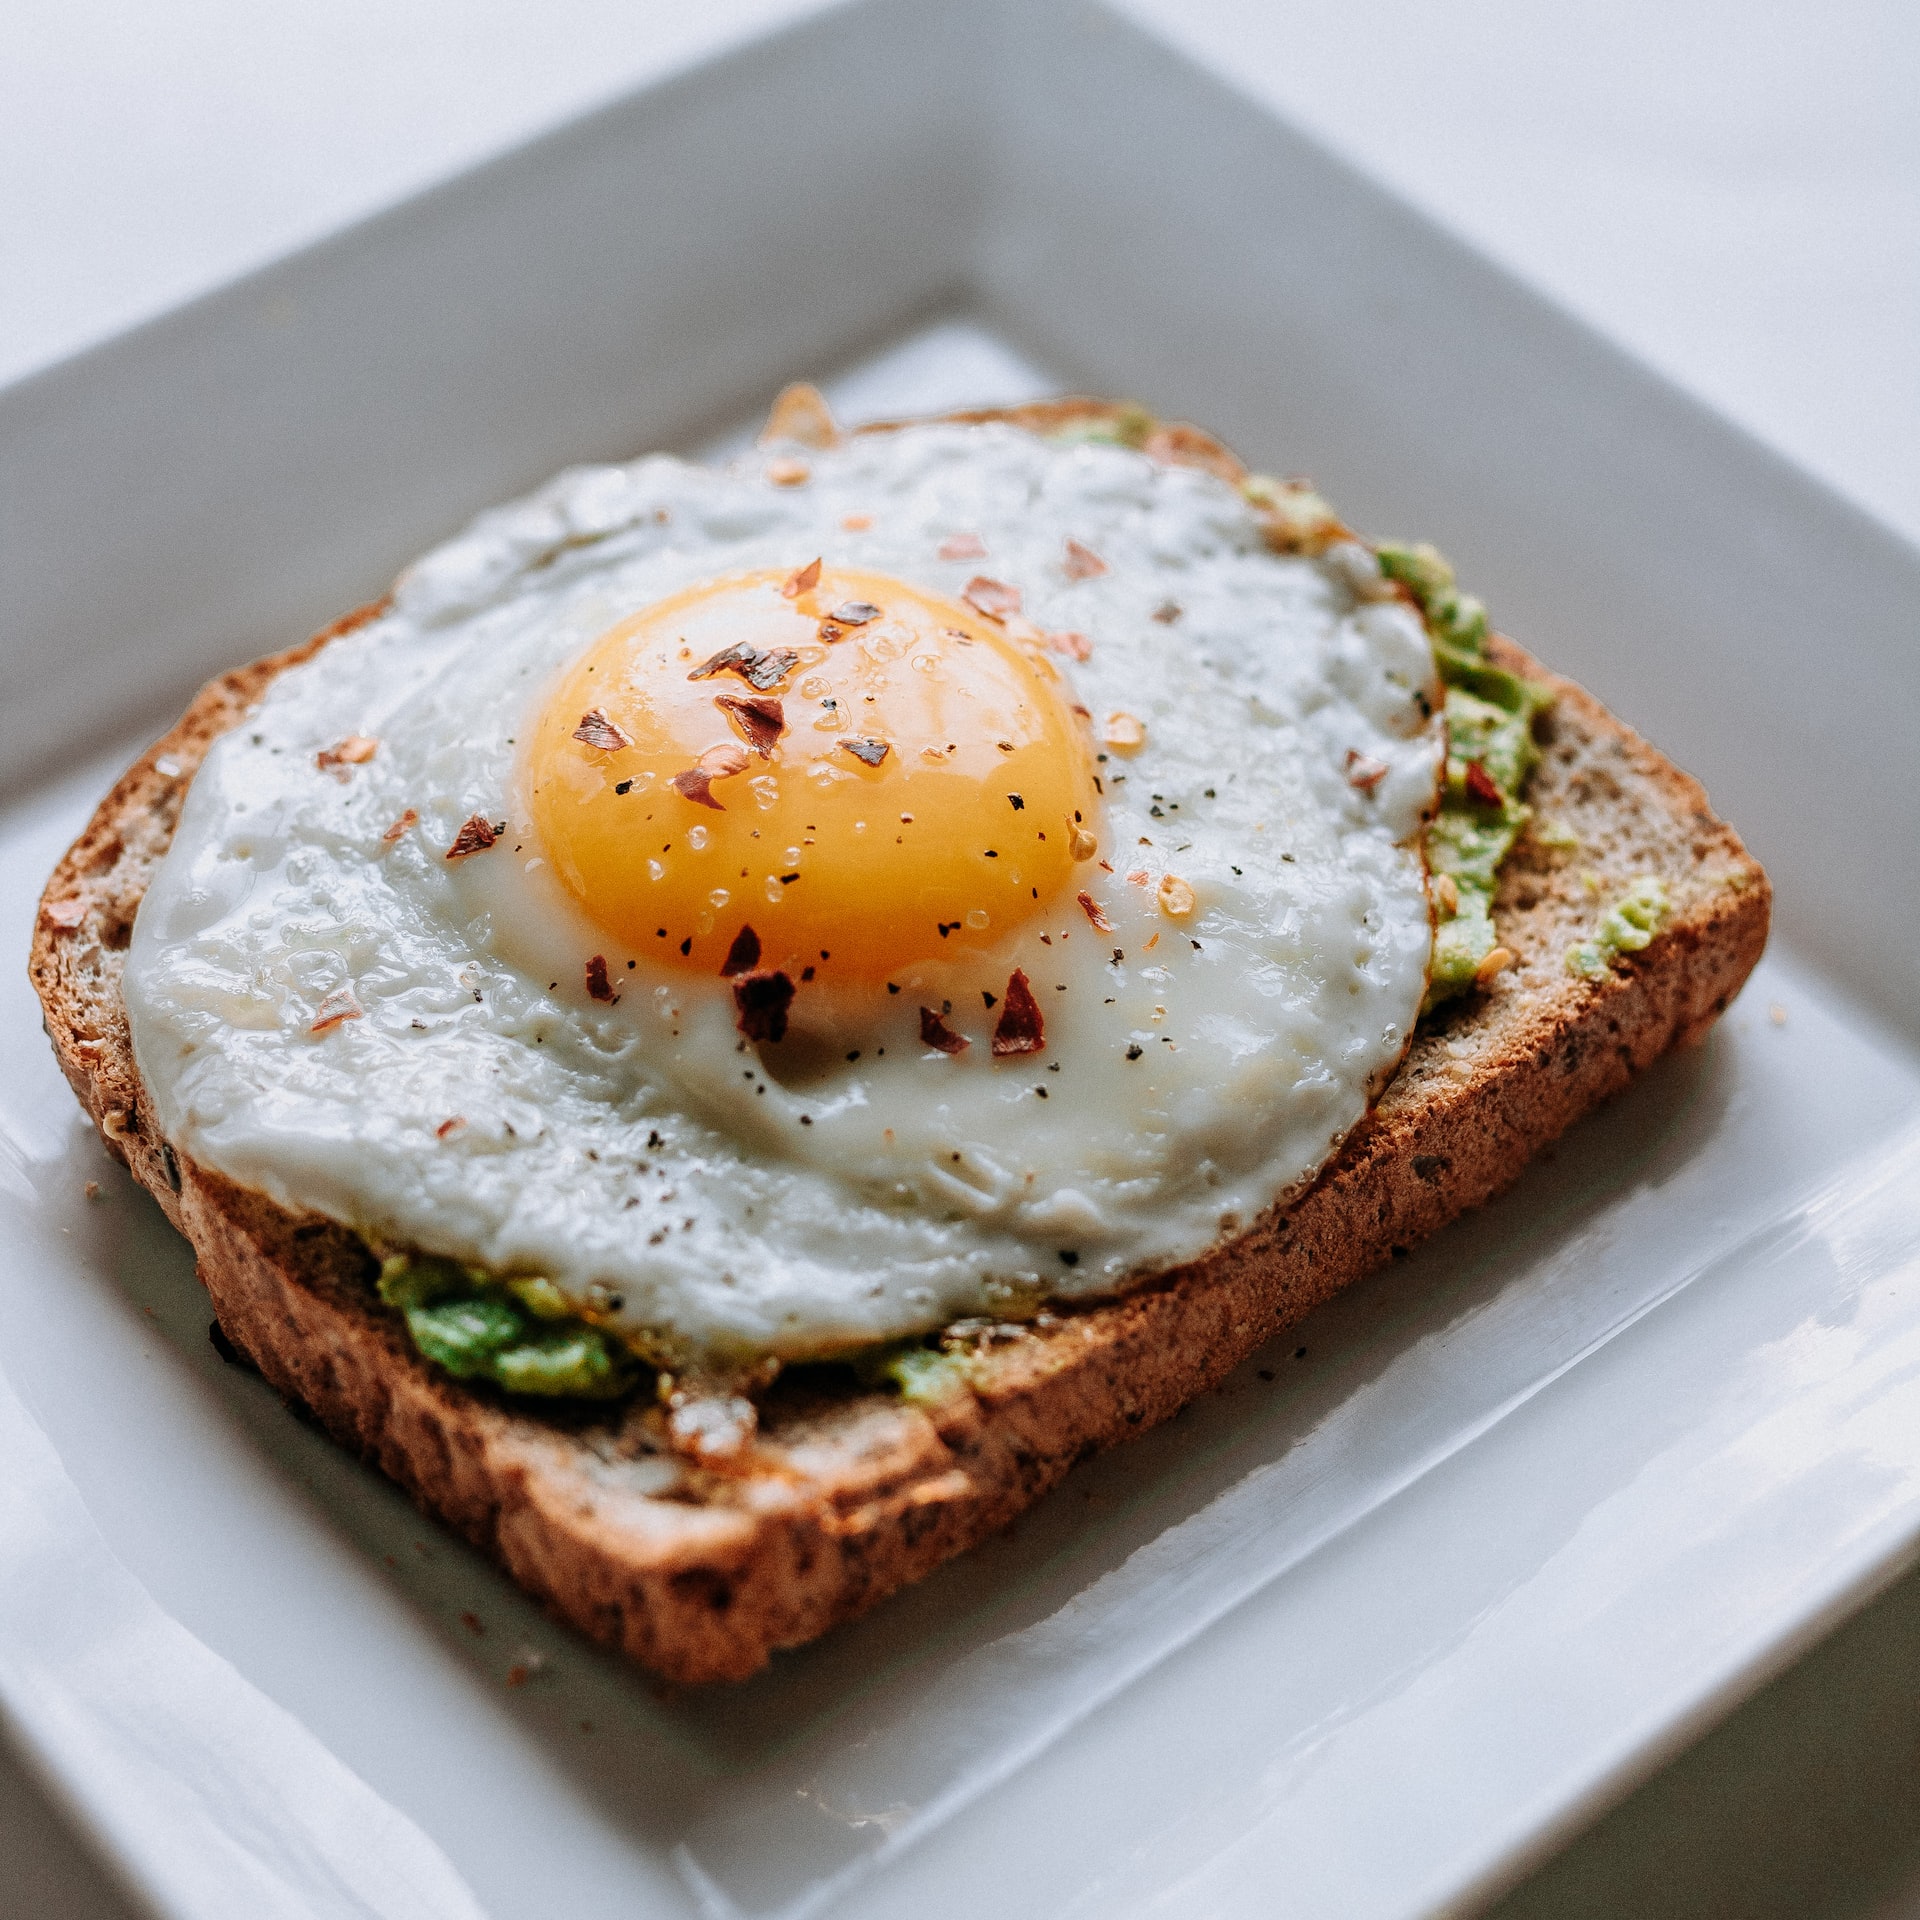 Café da manhã saudável: veja dicas de alimentos nutritivos para começar o dia